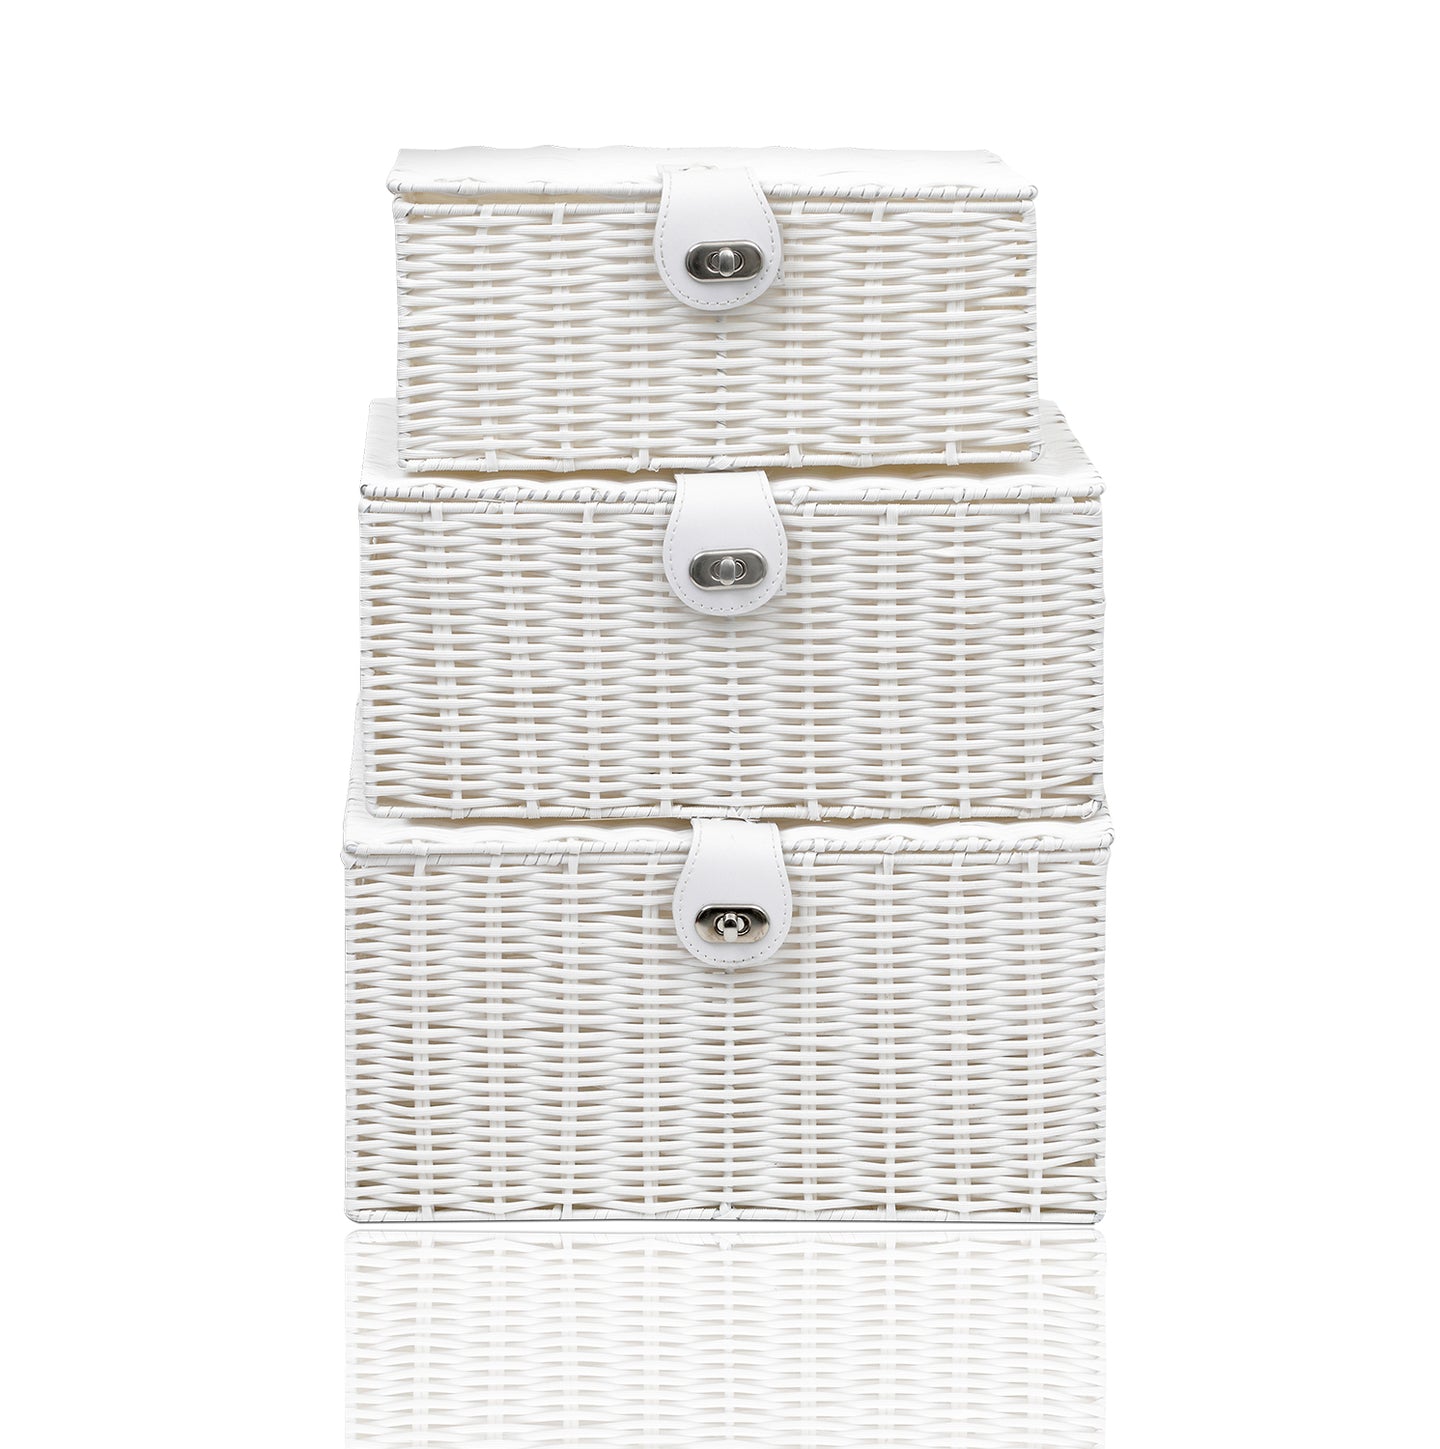 Arpan Set of 3 Resin Woven Storage Basket Box